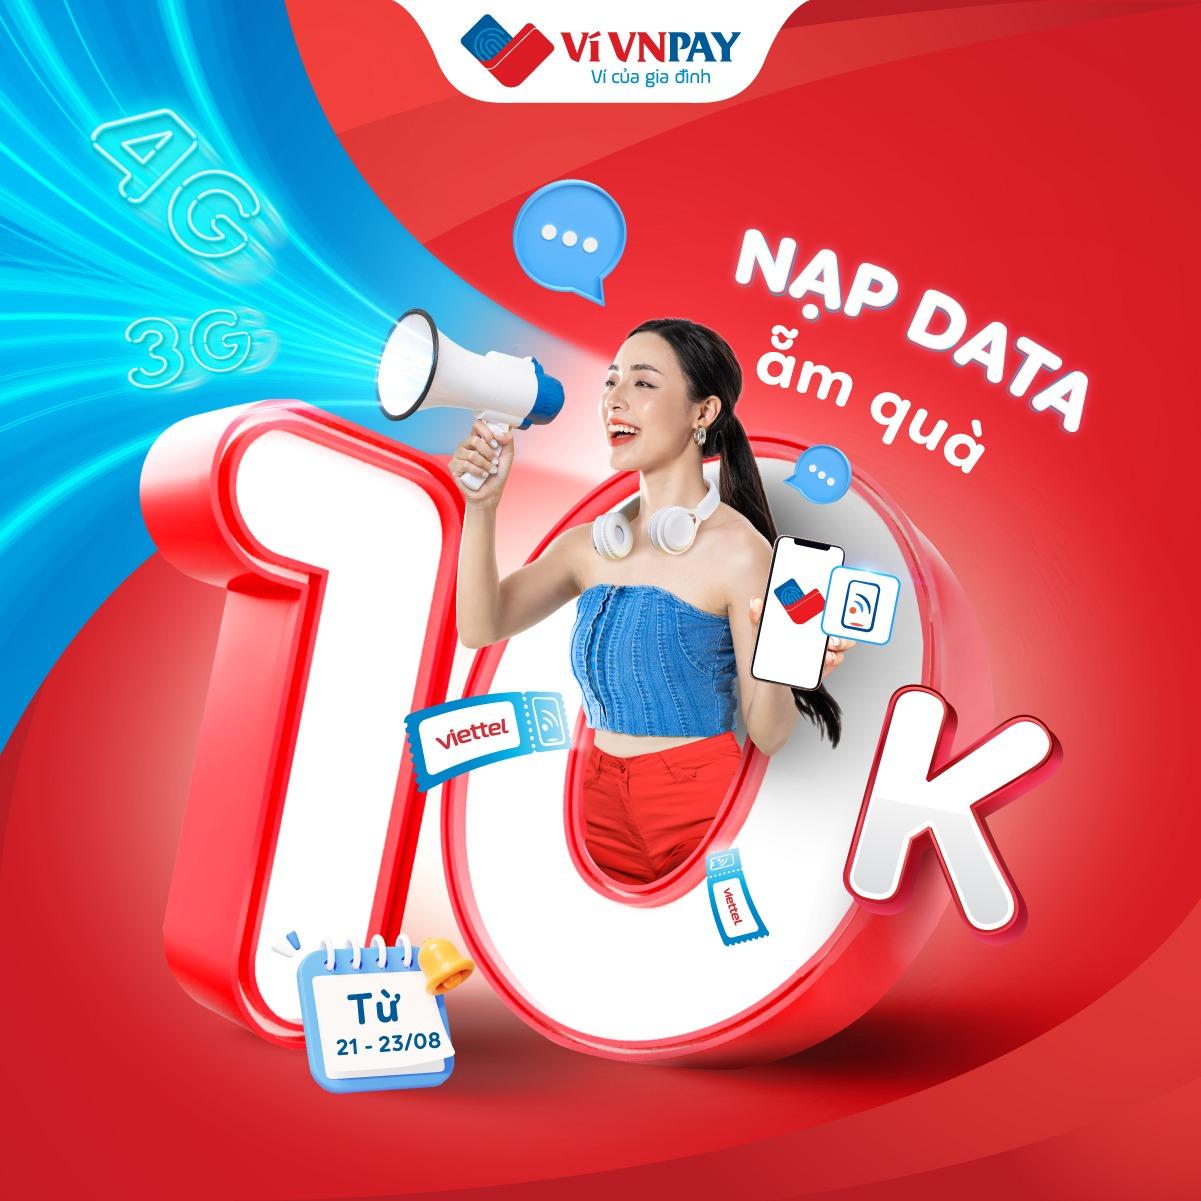 Nạp data 3G/4G Viettel trên ví VNPAY, tặng miễn phí mã nạp điện thoại